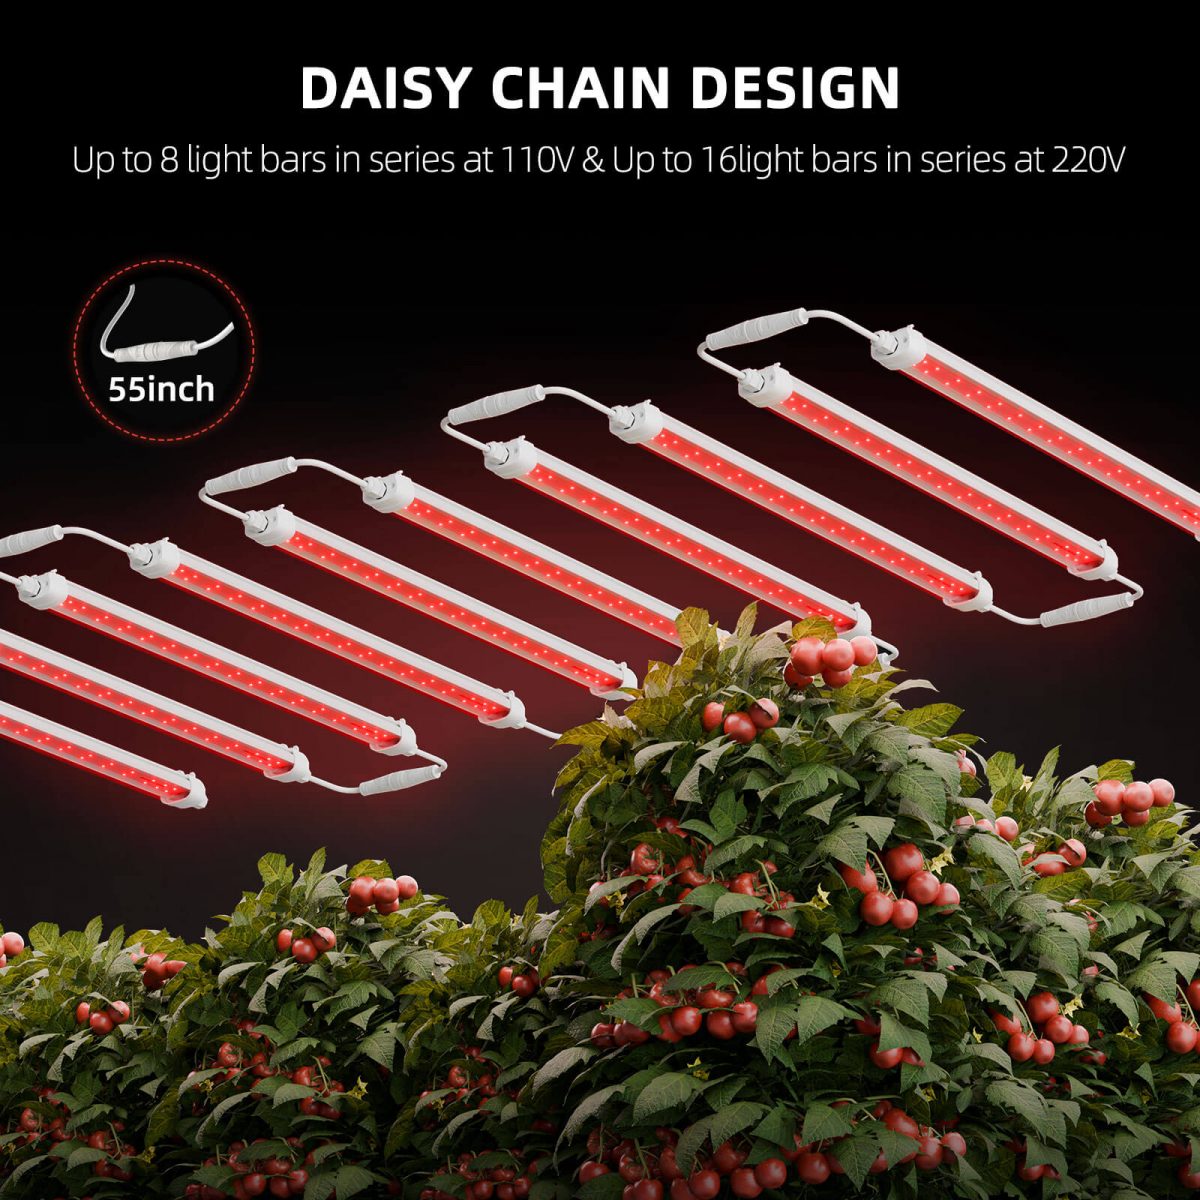 SF-Glowr80 Deep Red Supplemental leddaisy chain design